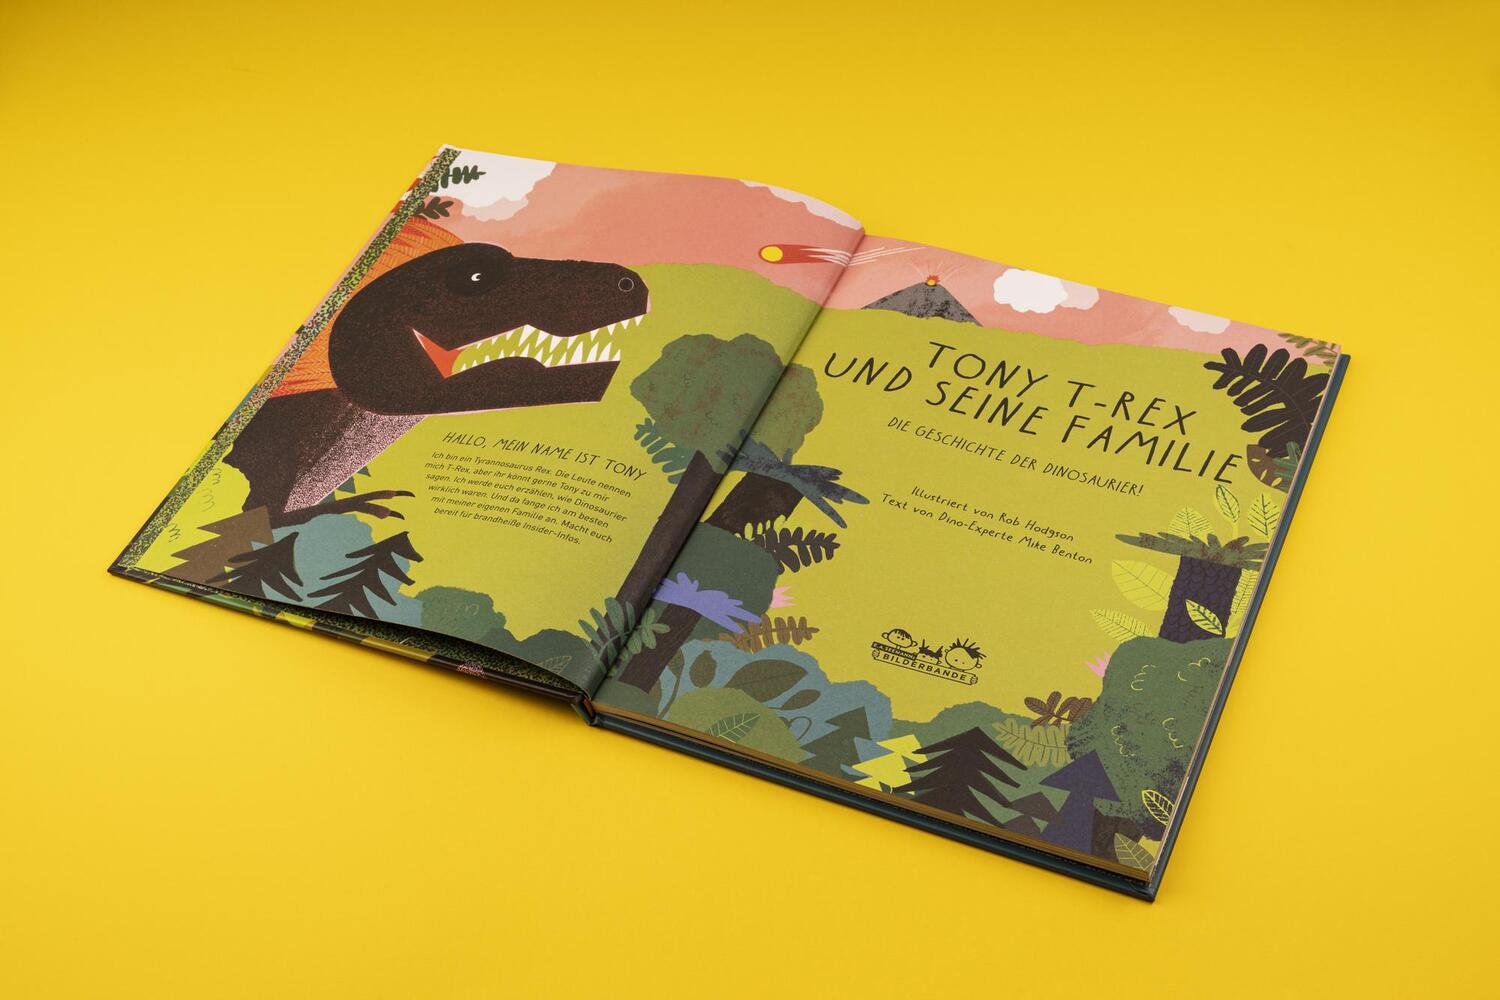 Bild: 9783865024350 | Tony T-Rex und seine Familie | Die Geschichte der Dinosaurier! | Buch